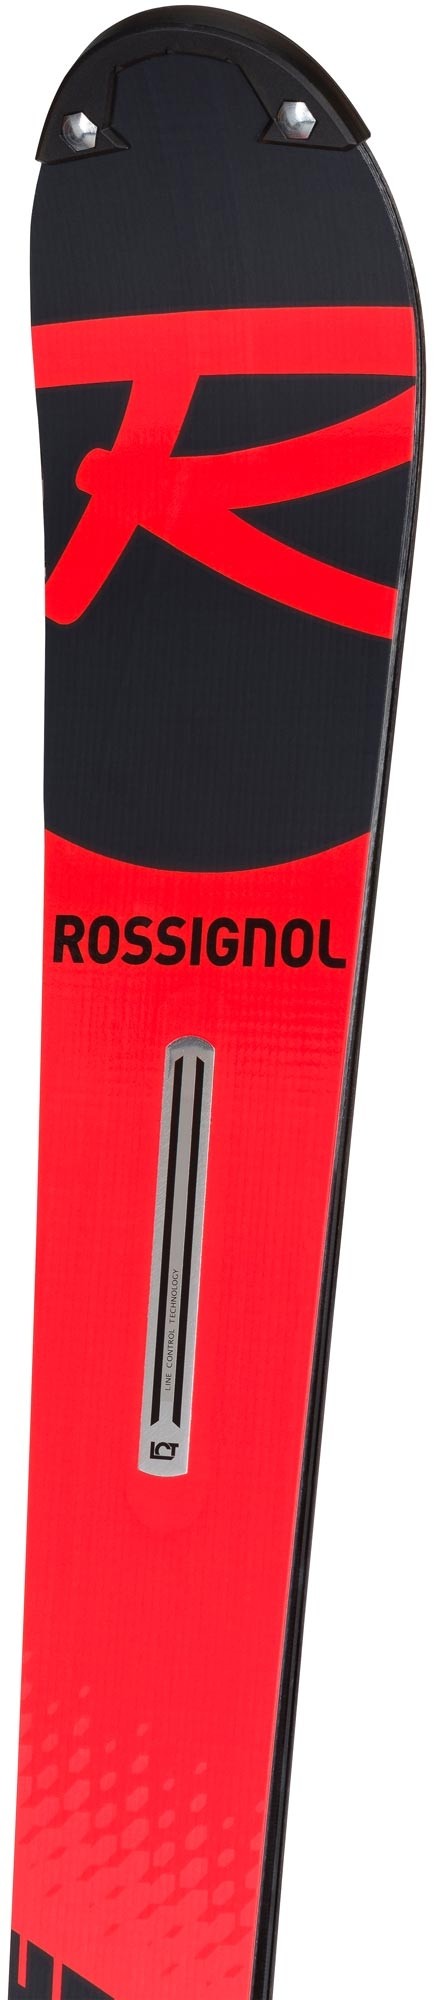 rossignol hero 150